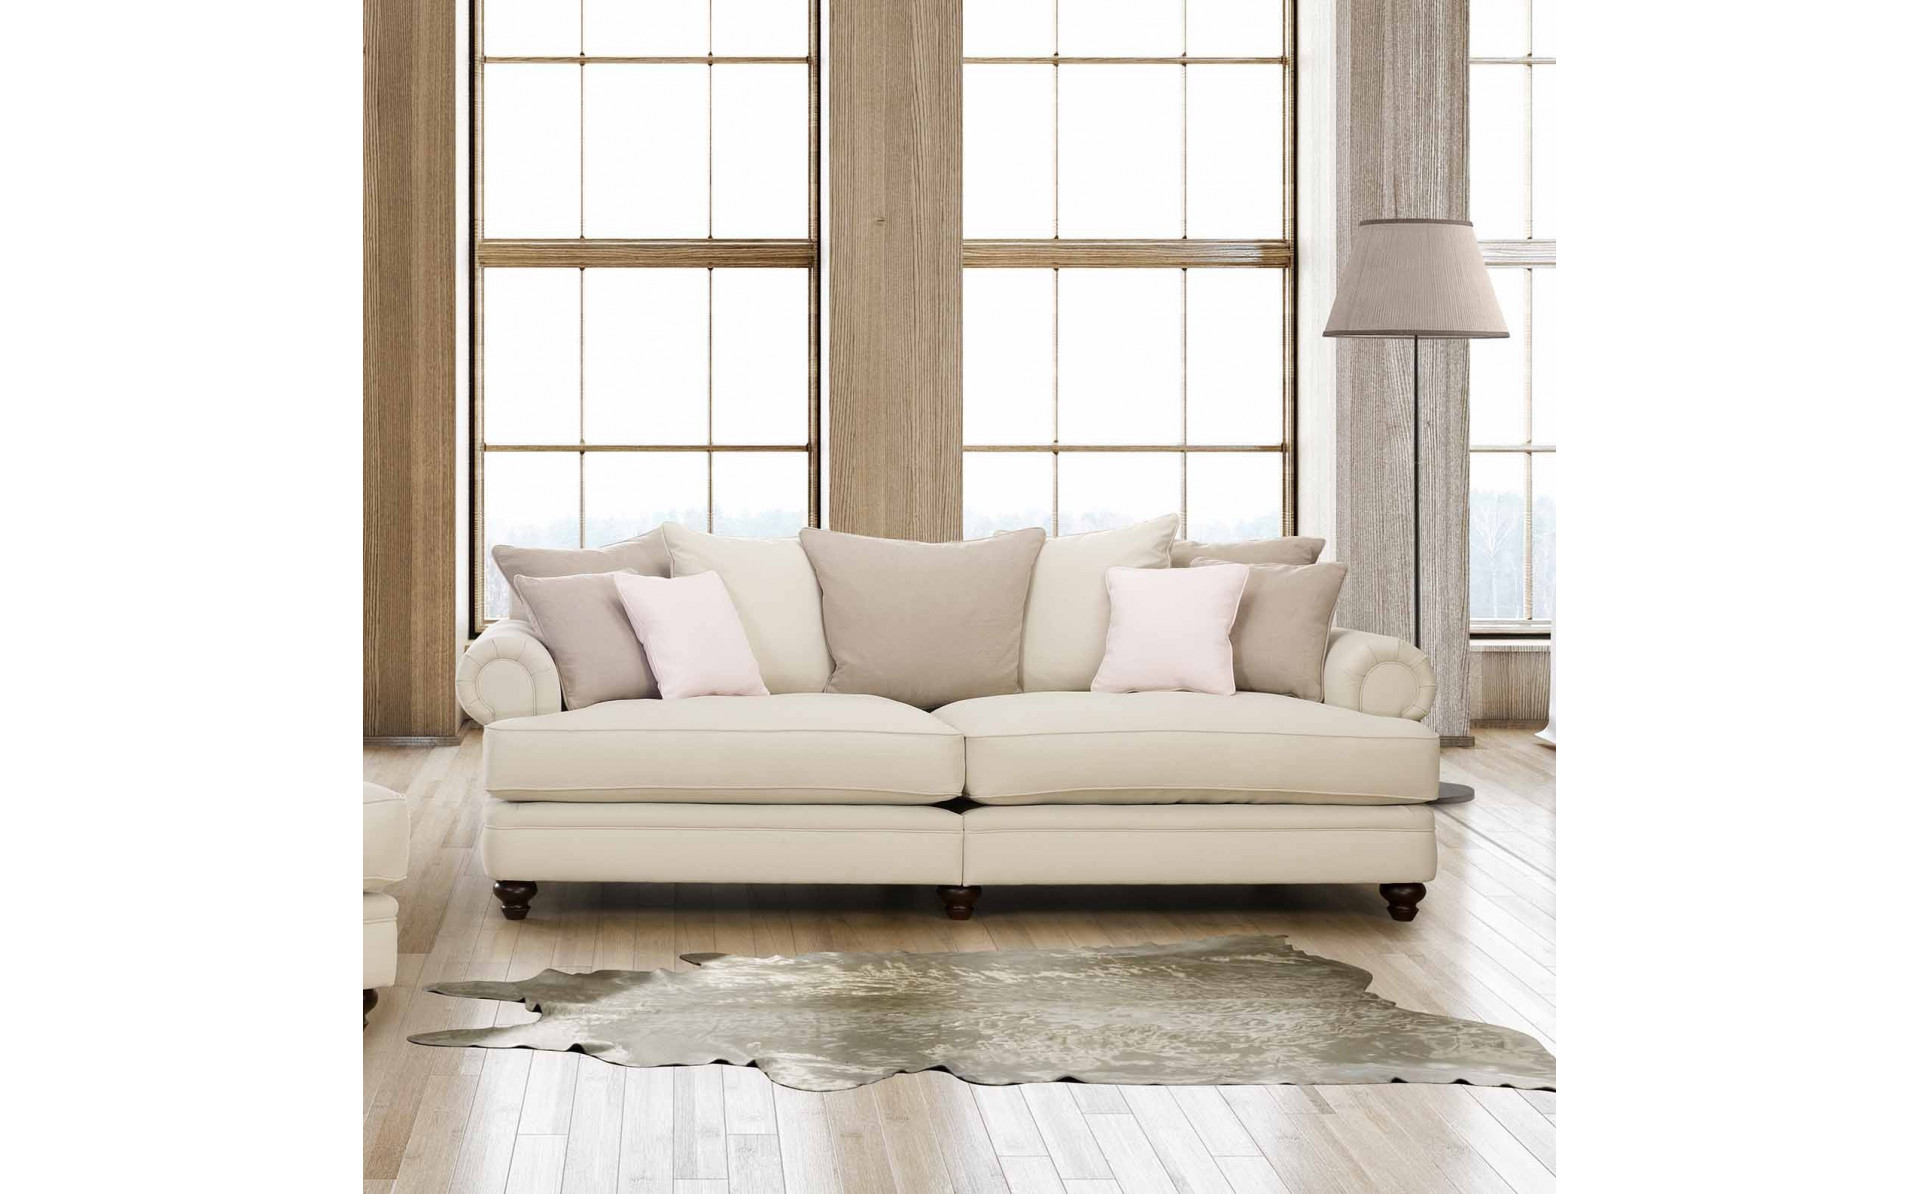 Chelsea XL sofa 290 cm z głębokim siedziskiem i stylizowanymi nogami